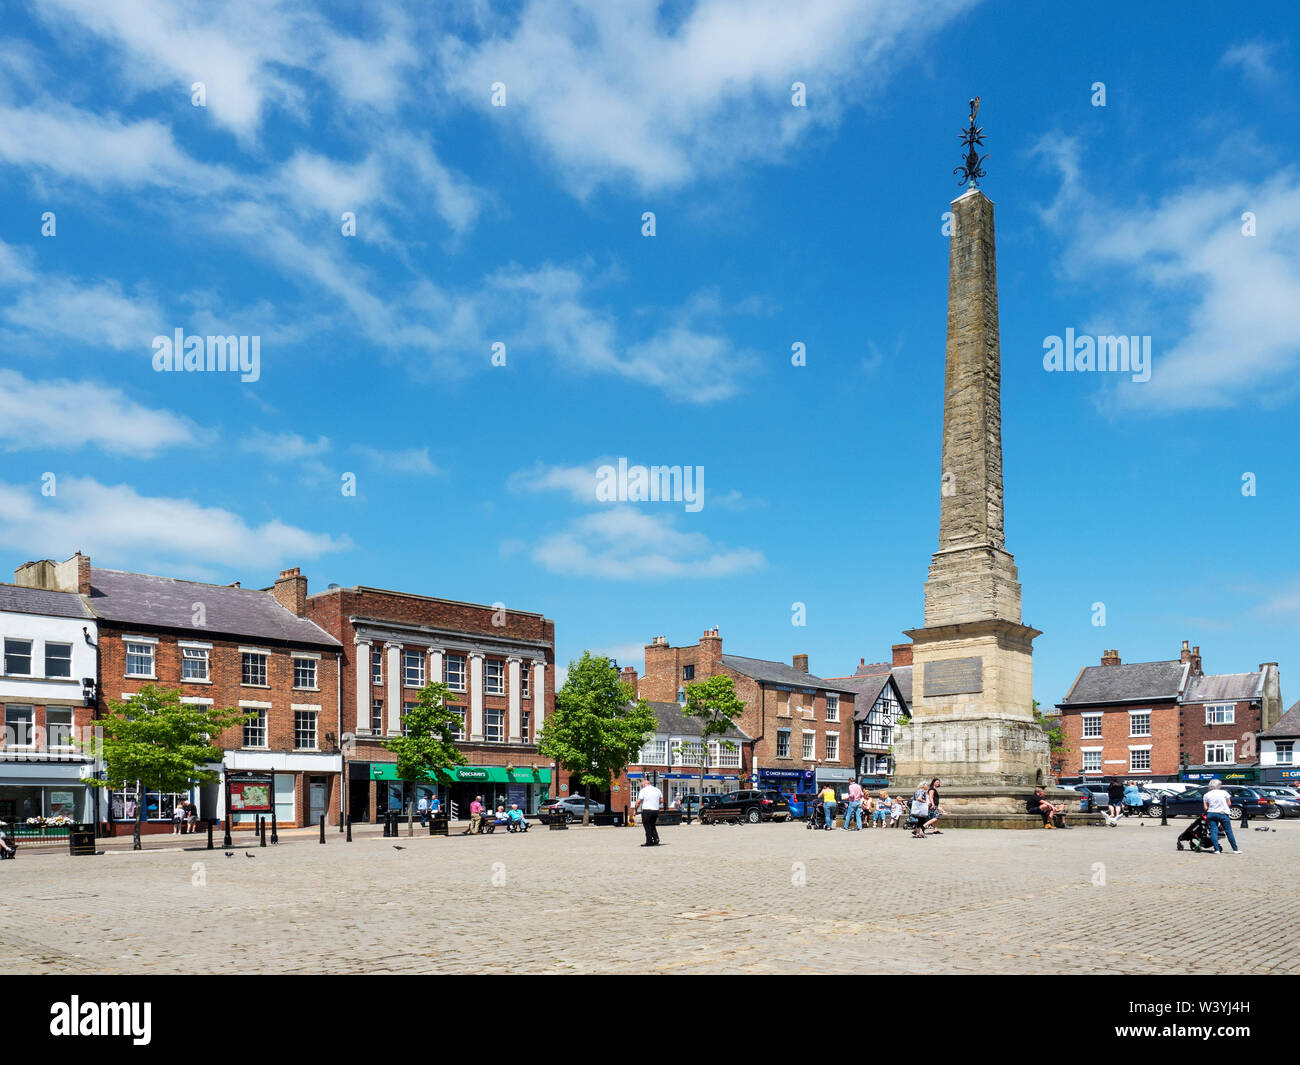 El obelisco de la plaza de mercado en verano en Ripon North Yorkshire, Inglaterra Foto de stock